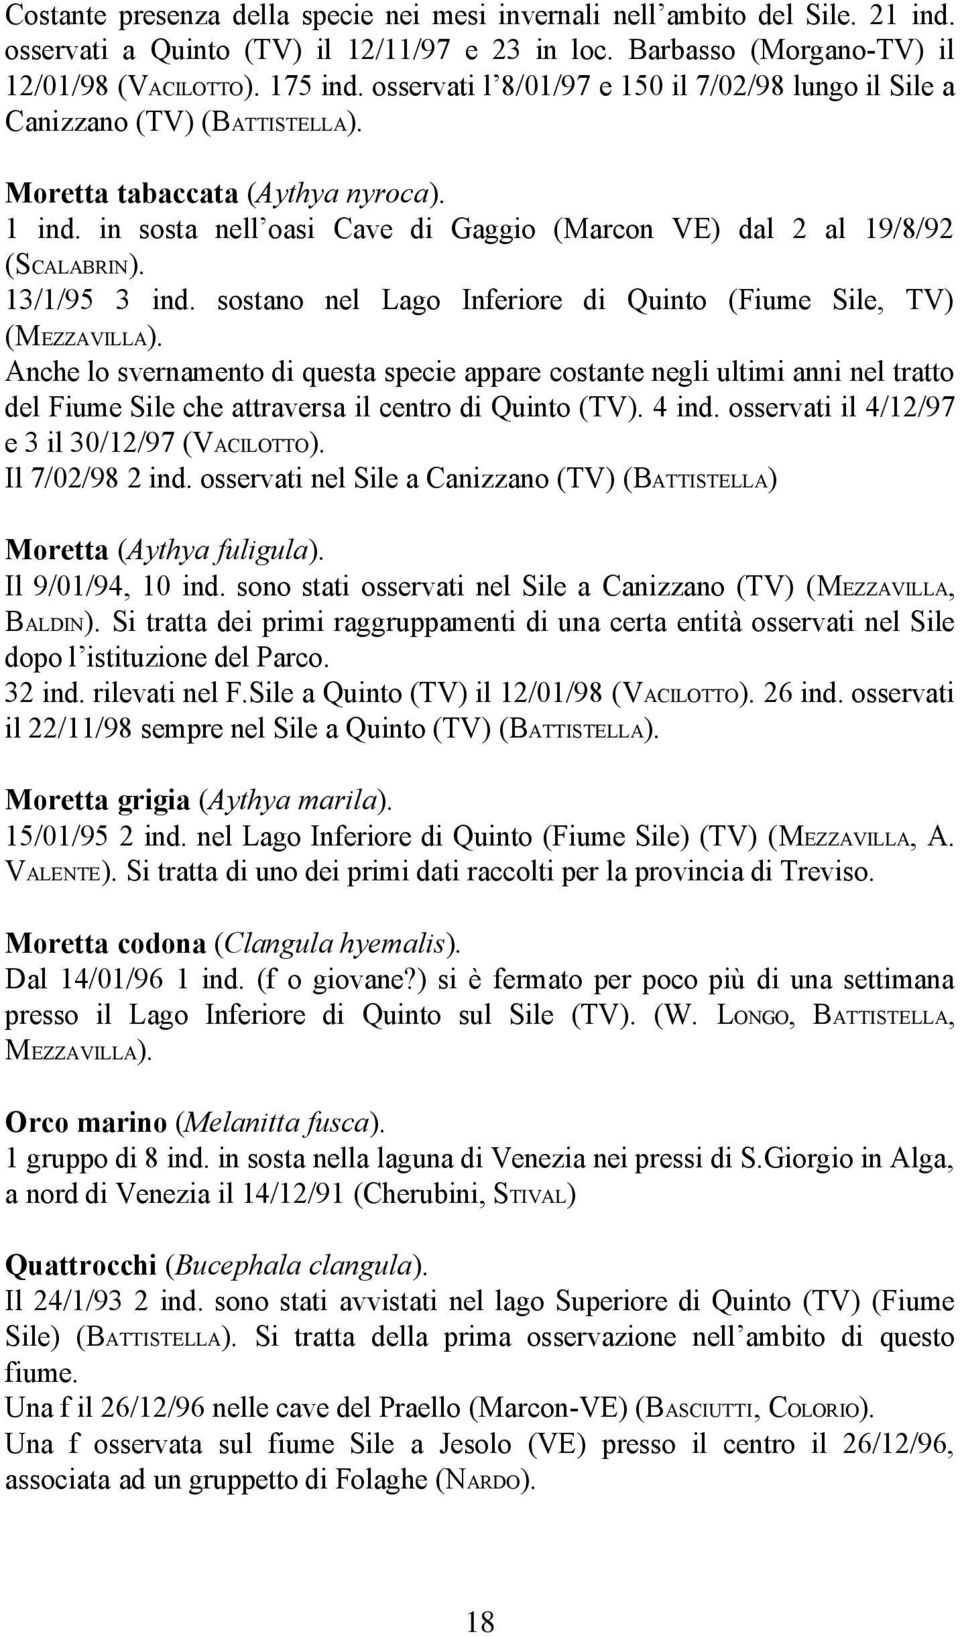 13/1/95 3 ind. sostano nel Lago Inferiore di Quinto (Fiume Sile, TV) (MEZZAVILLA).